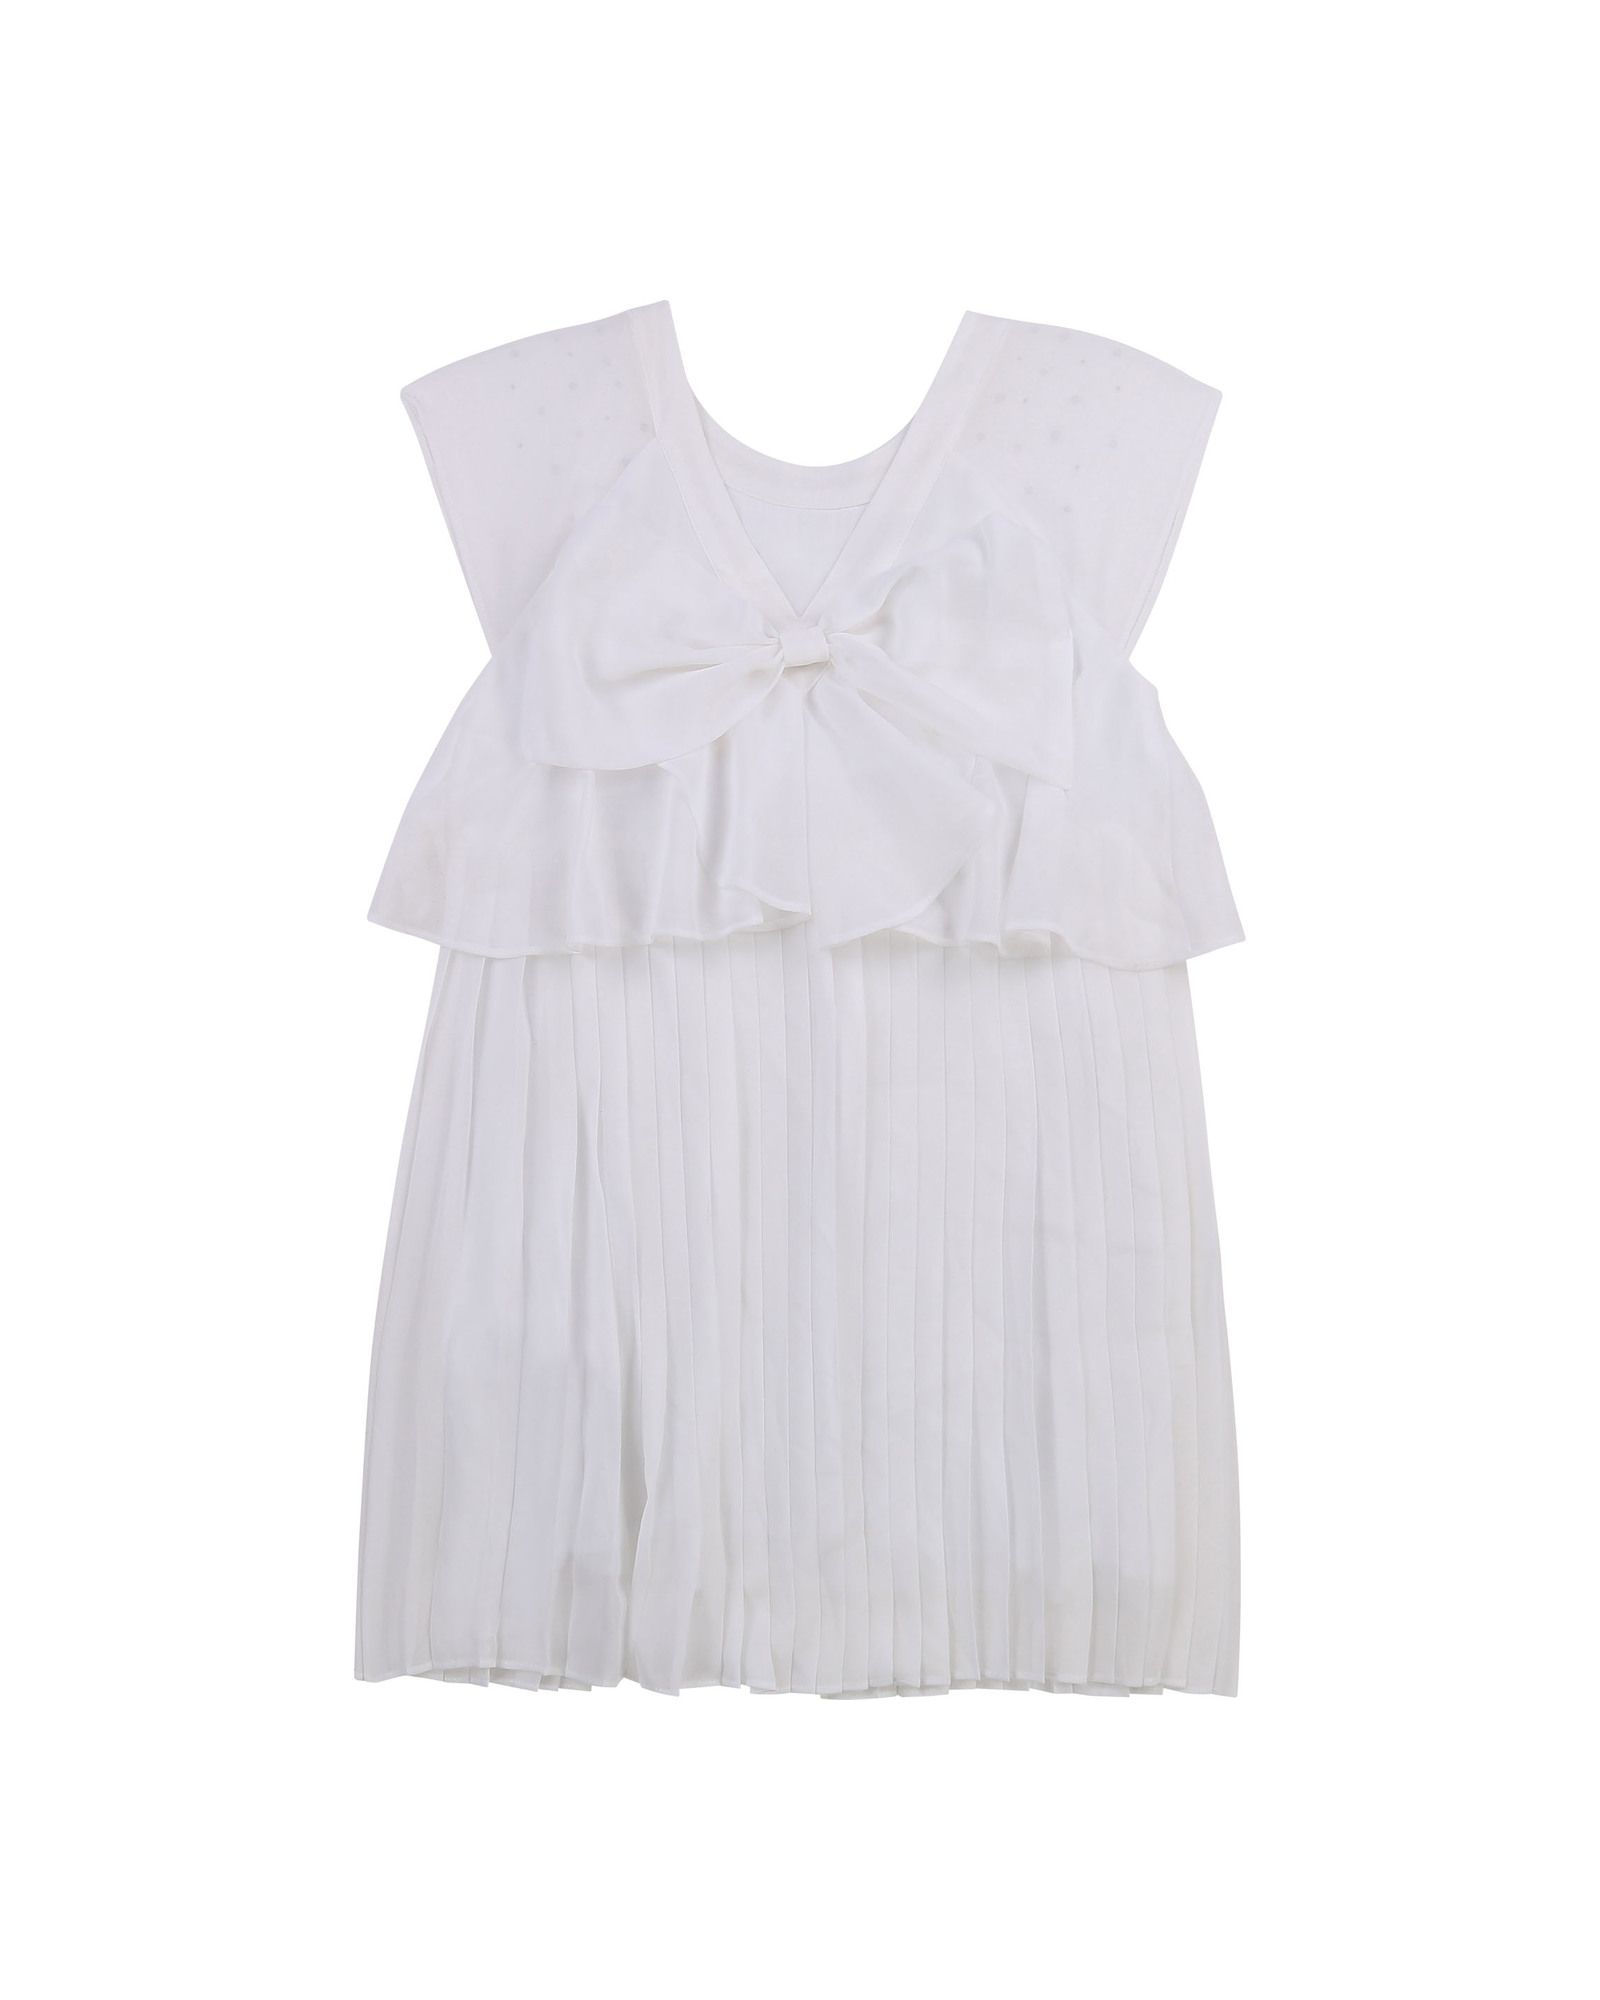 Buy Billieblush Kids' Rhinestone Pleated Dress, White Online at johnlewis.com